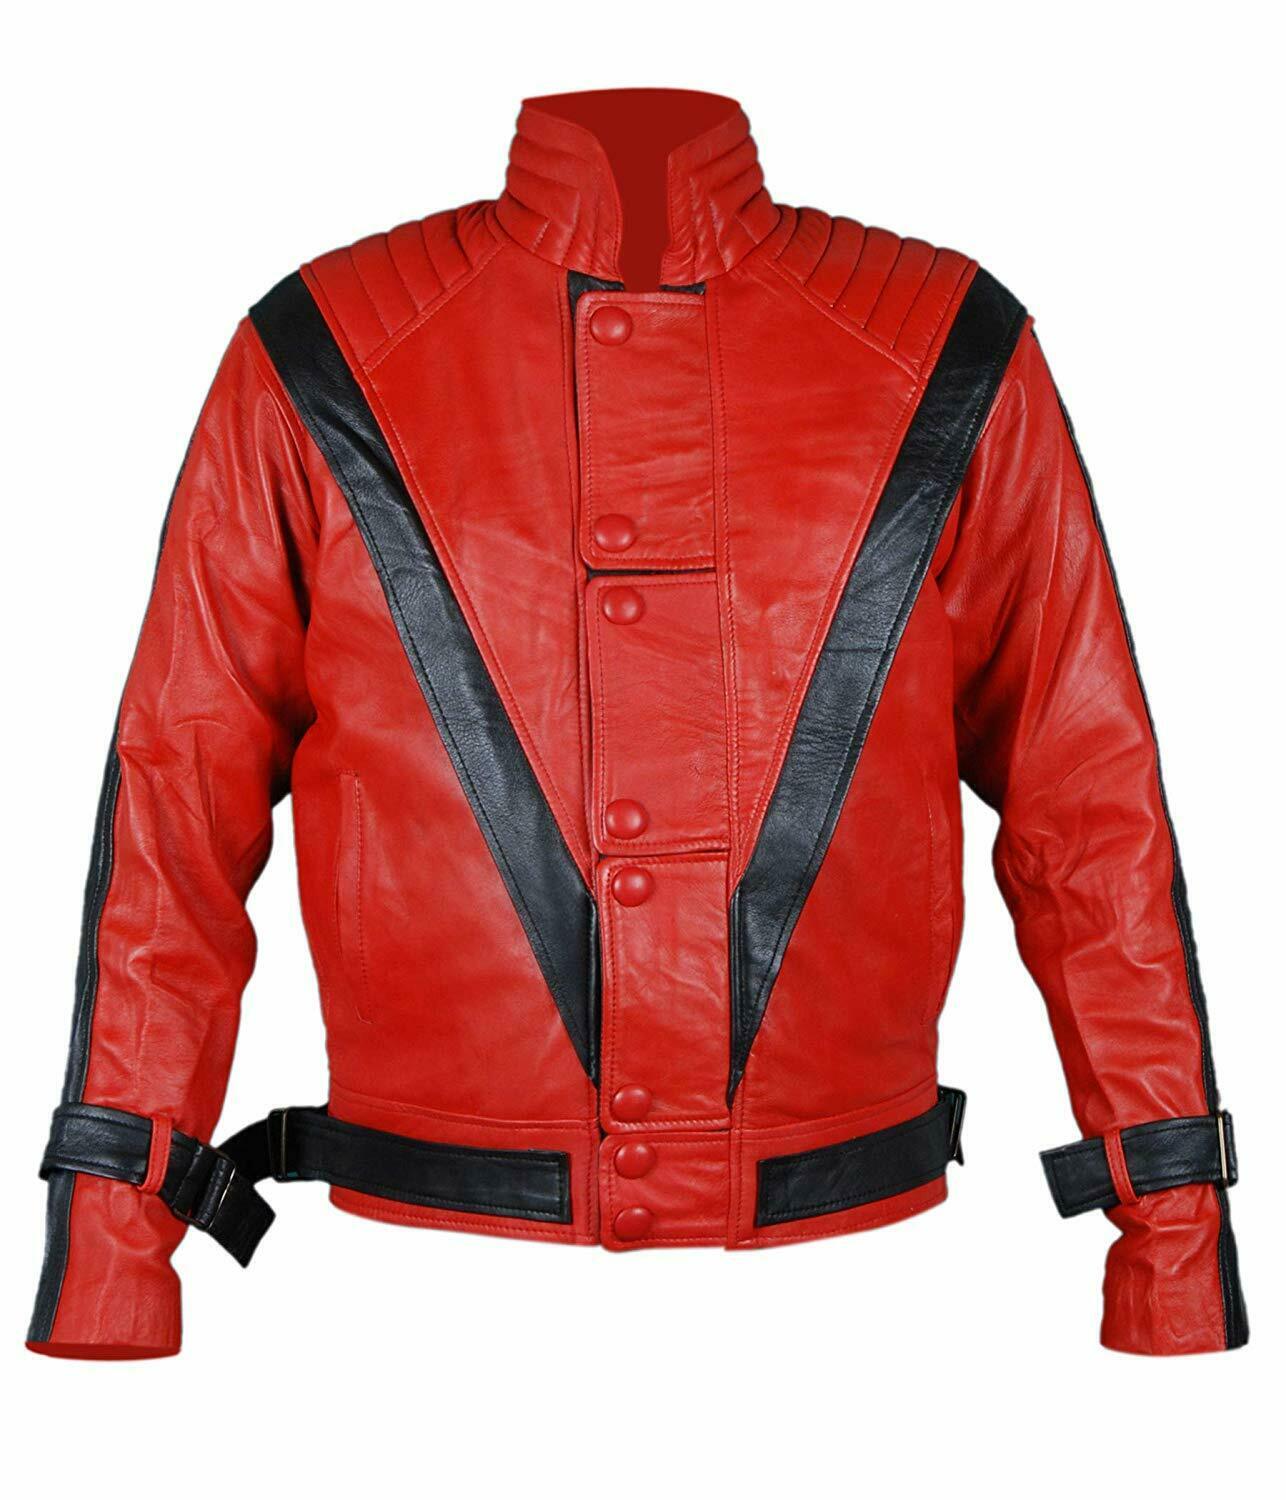  Michael Jackson Thriller Dancer Red Leather Jacket